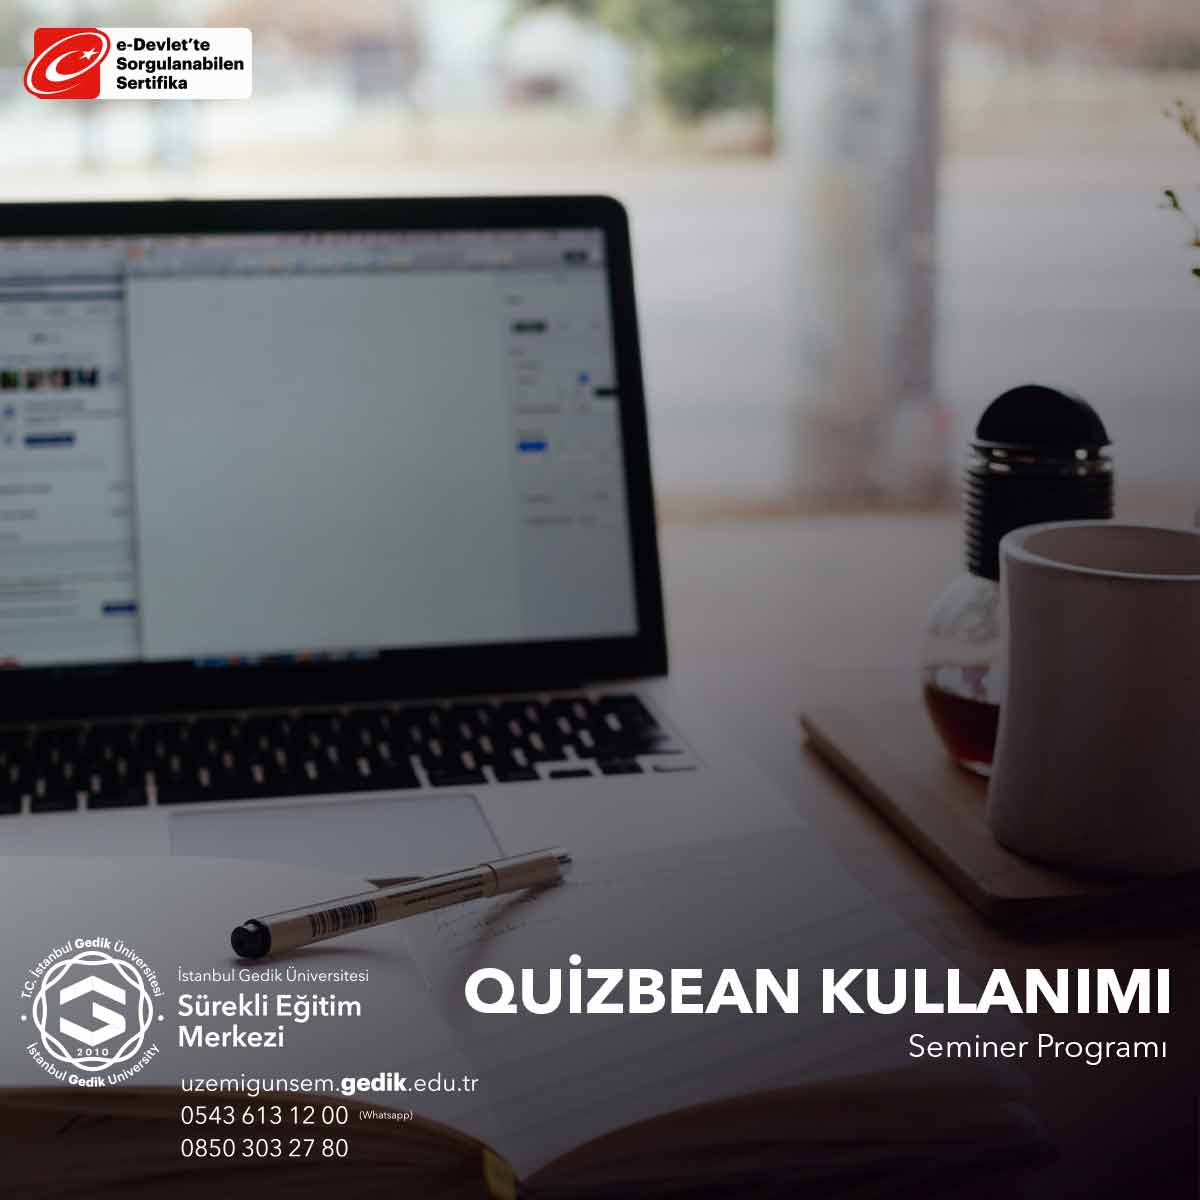 Quizbean Kullanımı Semineri, eğitimcilerin ve öğretmenlerin bu güçlü eğitim platformunu daha etkili bir şekilde kullanmalarını öğrenmeleri için düzenlenen bir seminerdir.